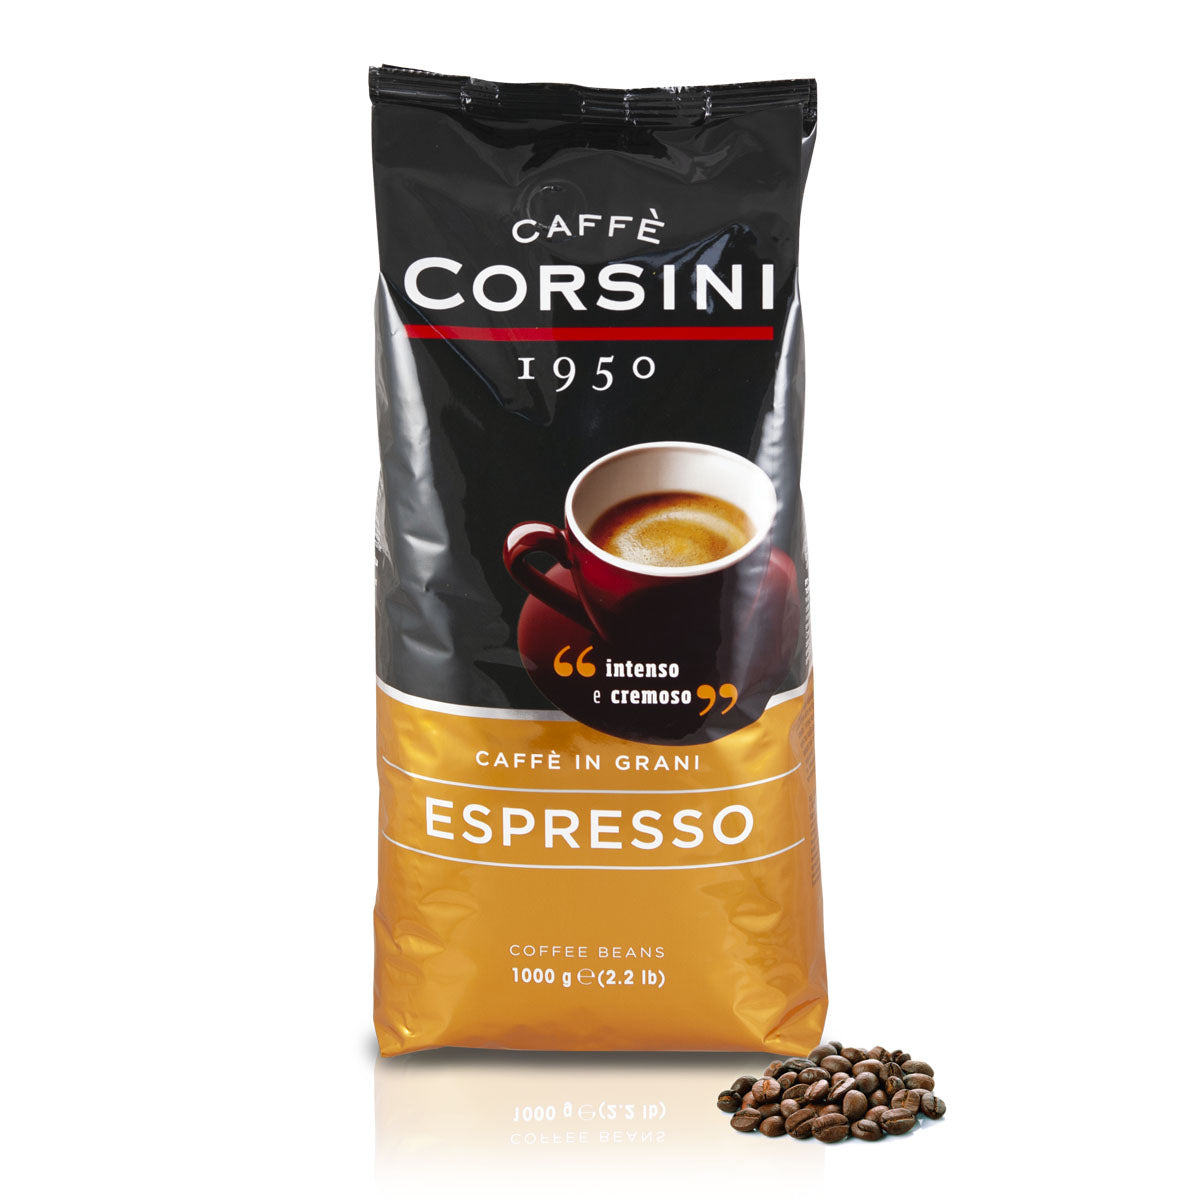 Caffè in grani | Espresso | Confezione da 1 Kg | Cartone con 8 confezioni